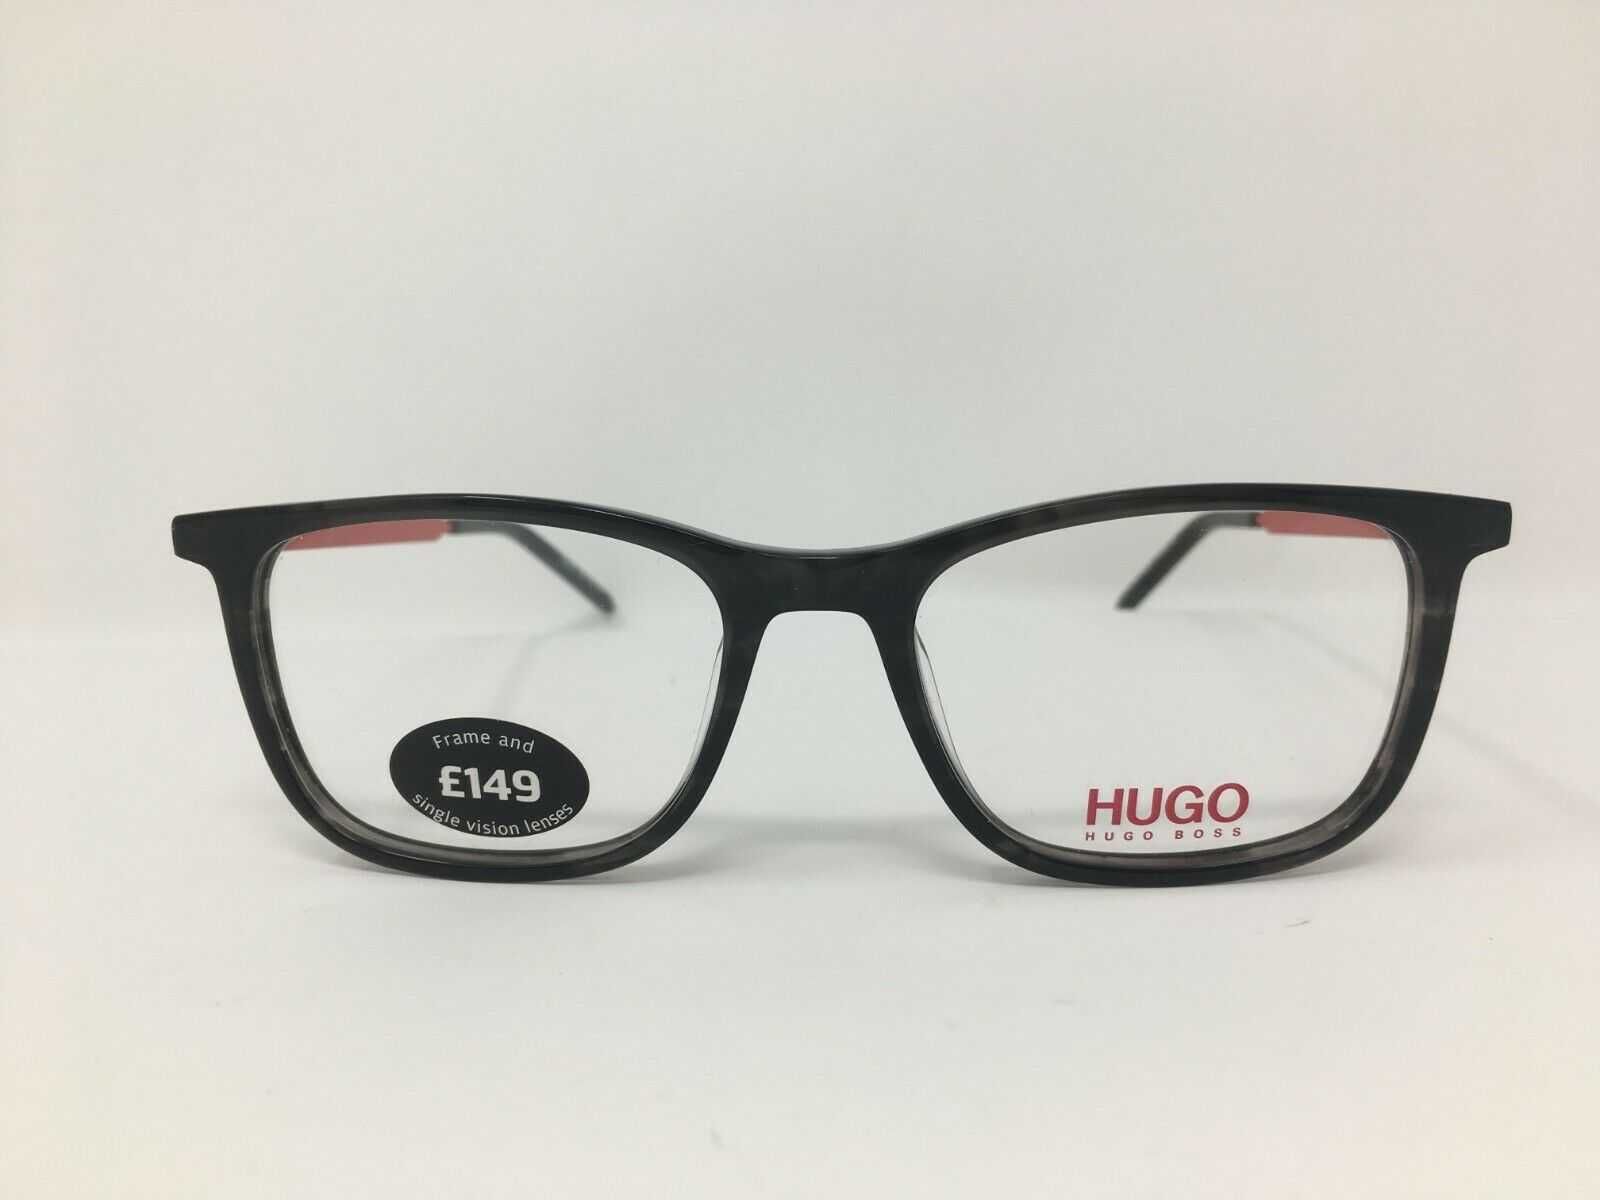 Rame ochelari Hugo Boss Unisex Glasses Frame Single Vision Lenses HG07